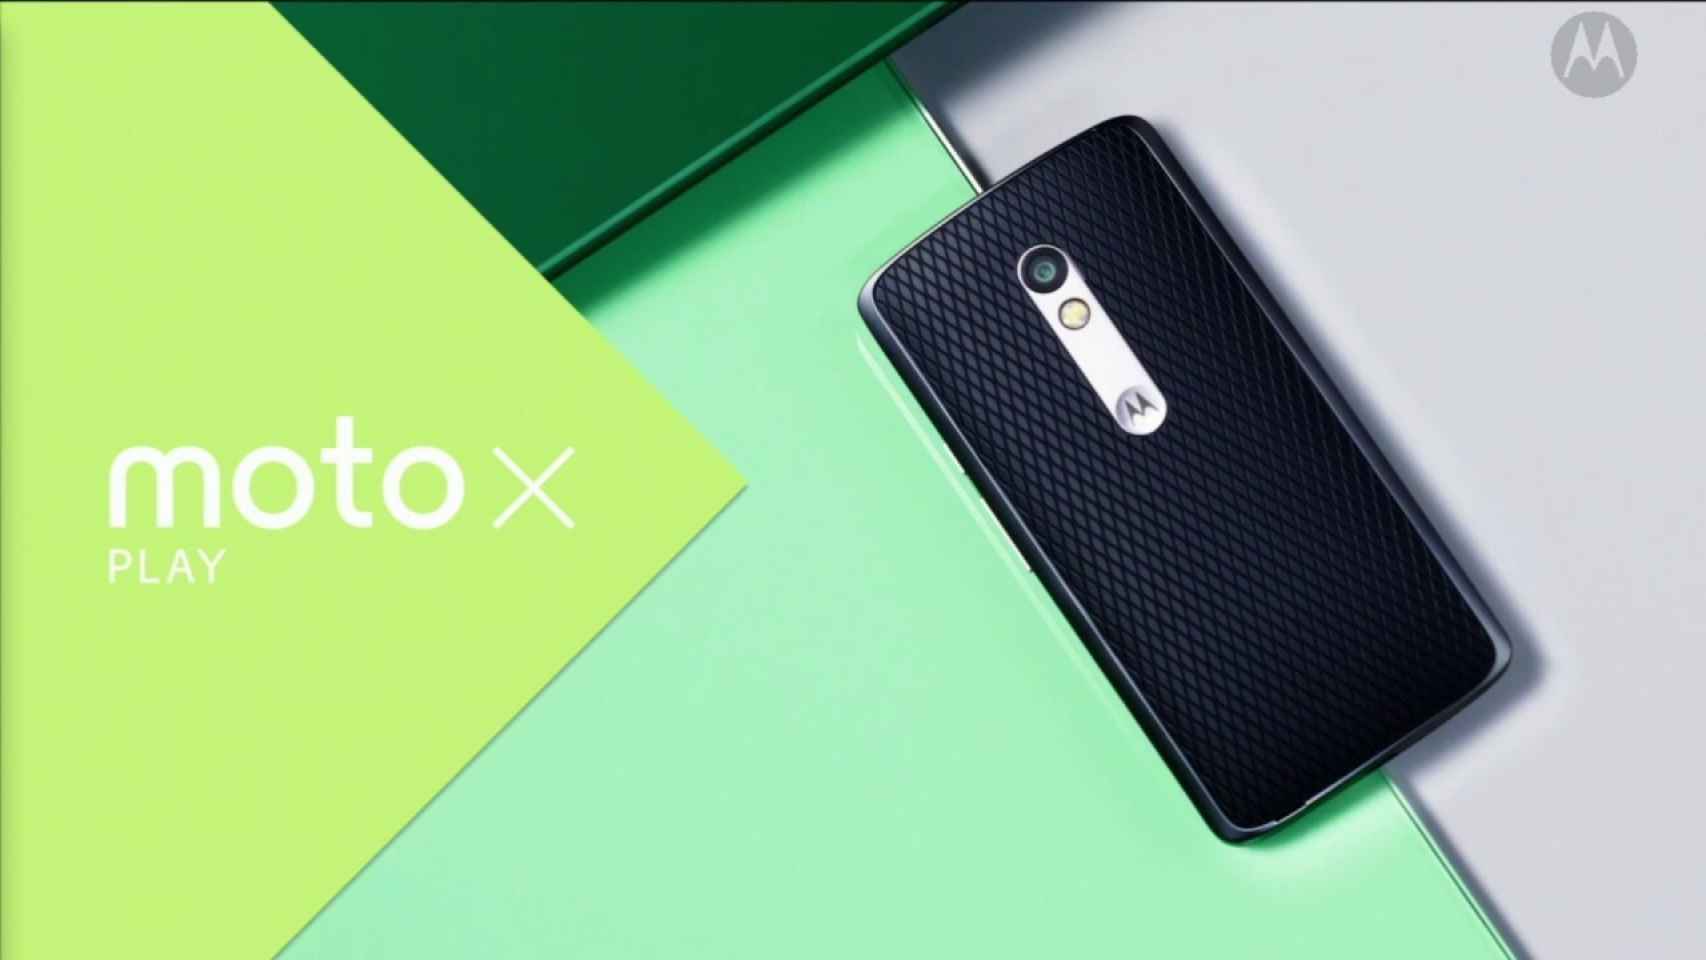 Motorola confirma que el Moto X Play no tiene giroscopio